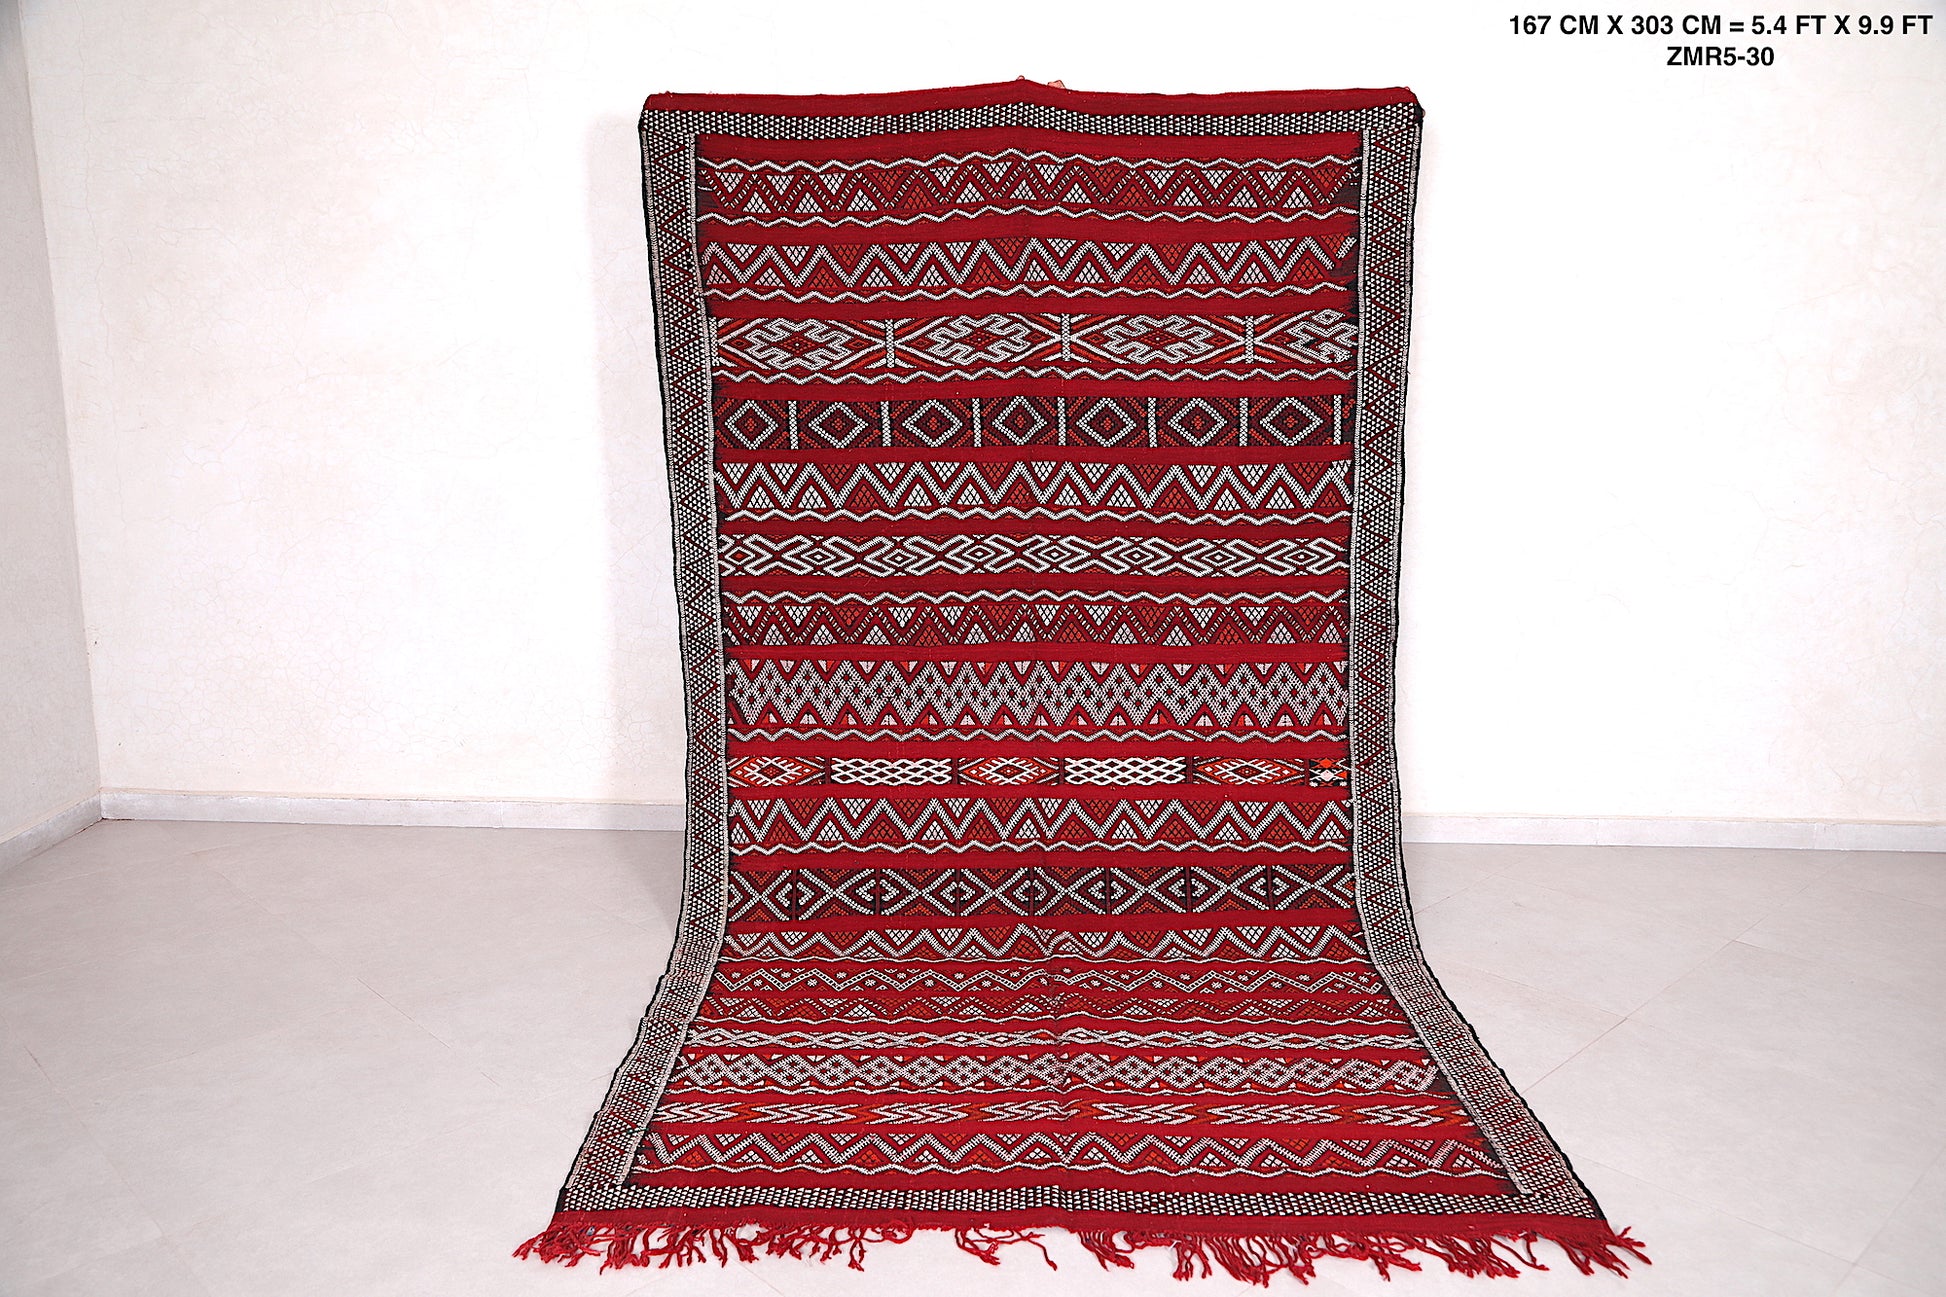 Hand Woven berber rug 5.4ft x 9.9ft